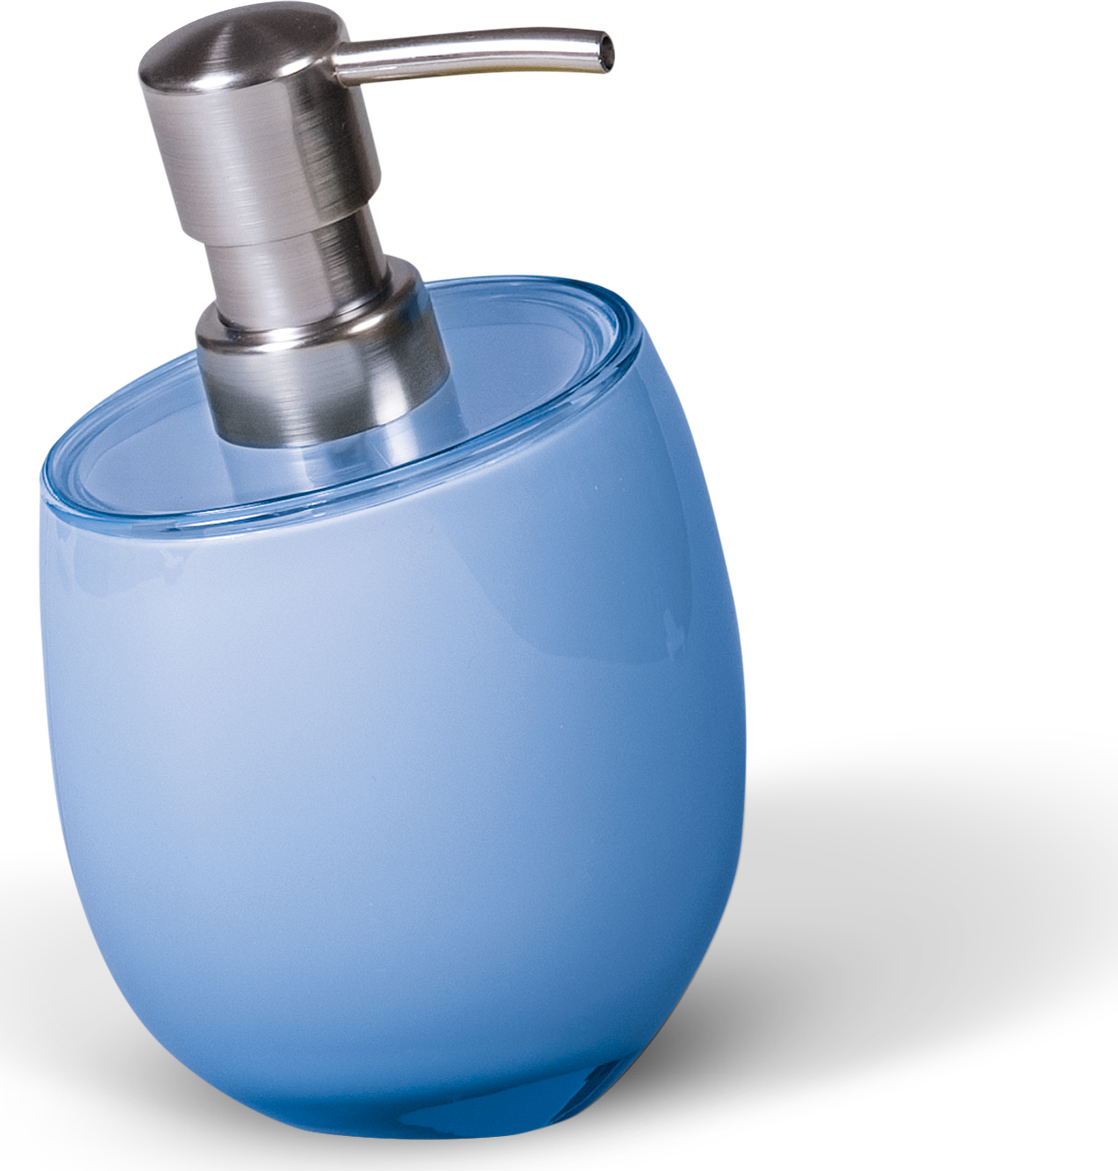 Дозатор для жидкого мыла "Immanuel Repose Blue", изготовленный из прозрачного акрила голубого цвета, отлично подойдет для вашей ванной комнаты. Такой аксессуар очень удобен в использовании, достаточно лишь перелить жидкое мыло в дозатор, а когда необходимо использование мыла, легким нажатием выдавить нужное количество.  Дозатор для жидкого мыла "Immanuel Repose Blue" создаст особую атмосферу уюта и максимального комфорта в ванной. Характеристики:   Материал: пластик, акрил. Размер дозатора: 10 см х 10 см х 16 см. Артикул: 12271.